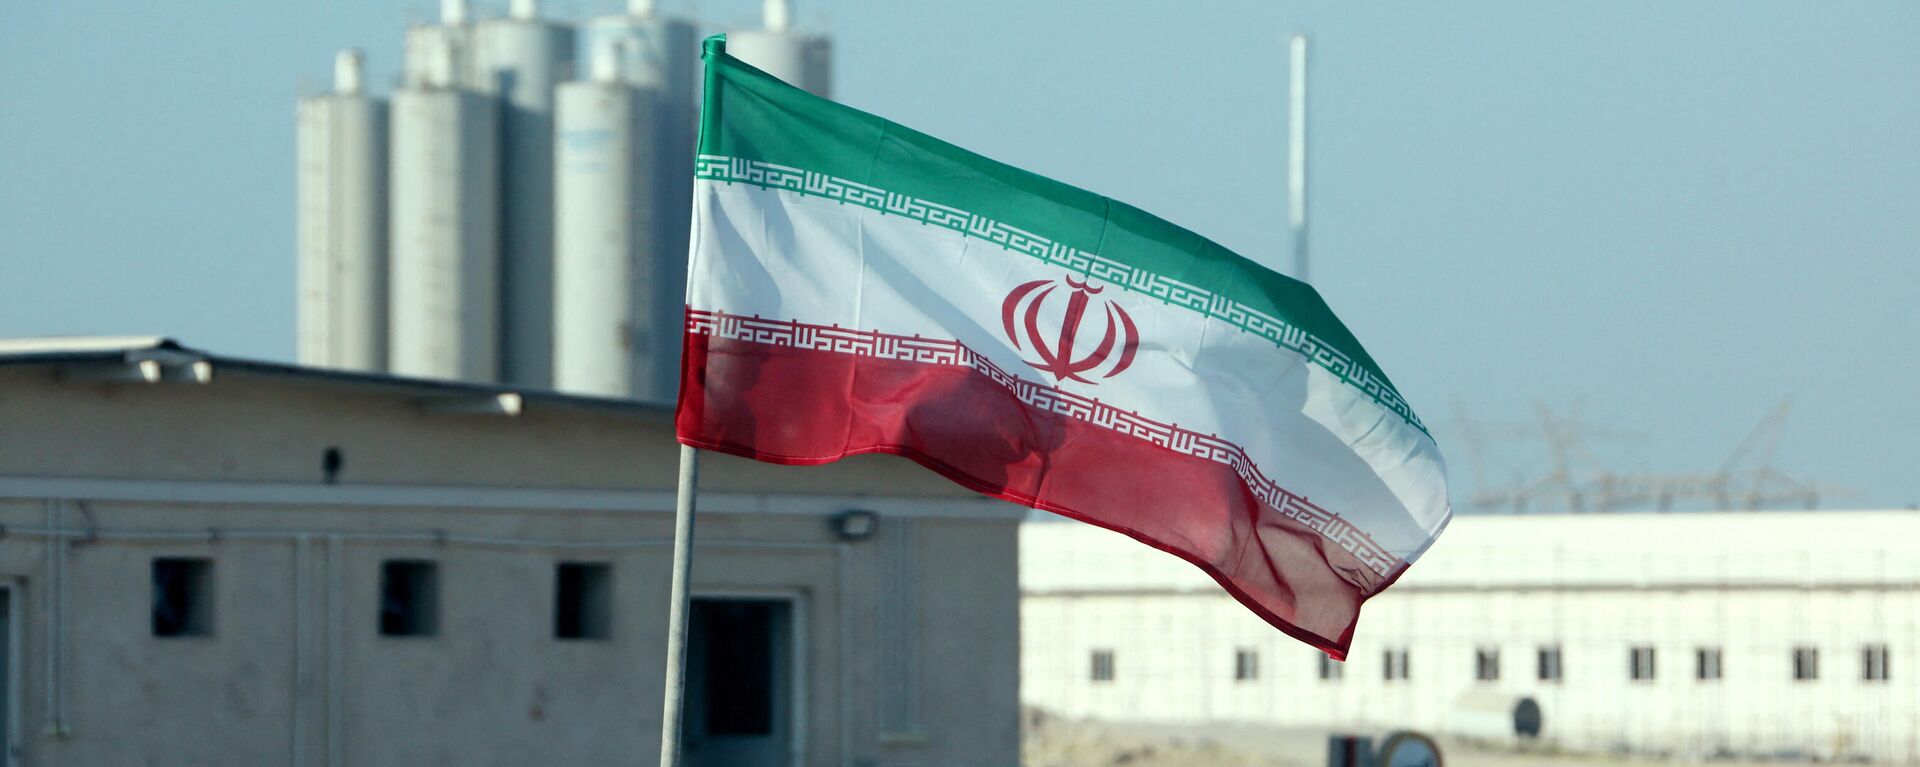 La bandera de Irán frente a una planta nuclear (archivo) - Sputnik Mundo, 1920, 25.10.2021